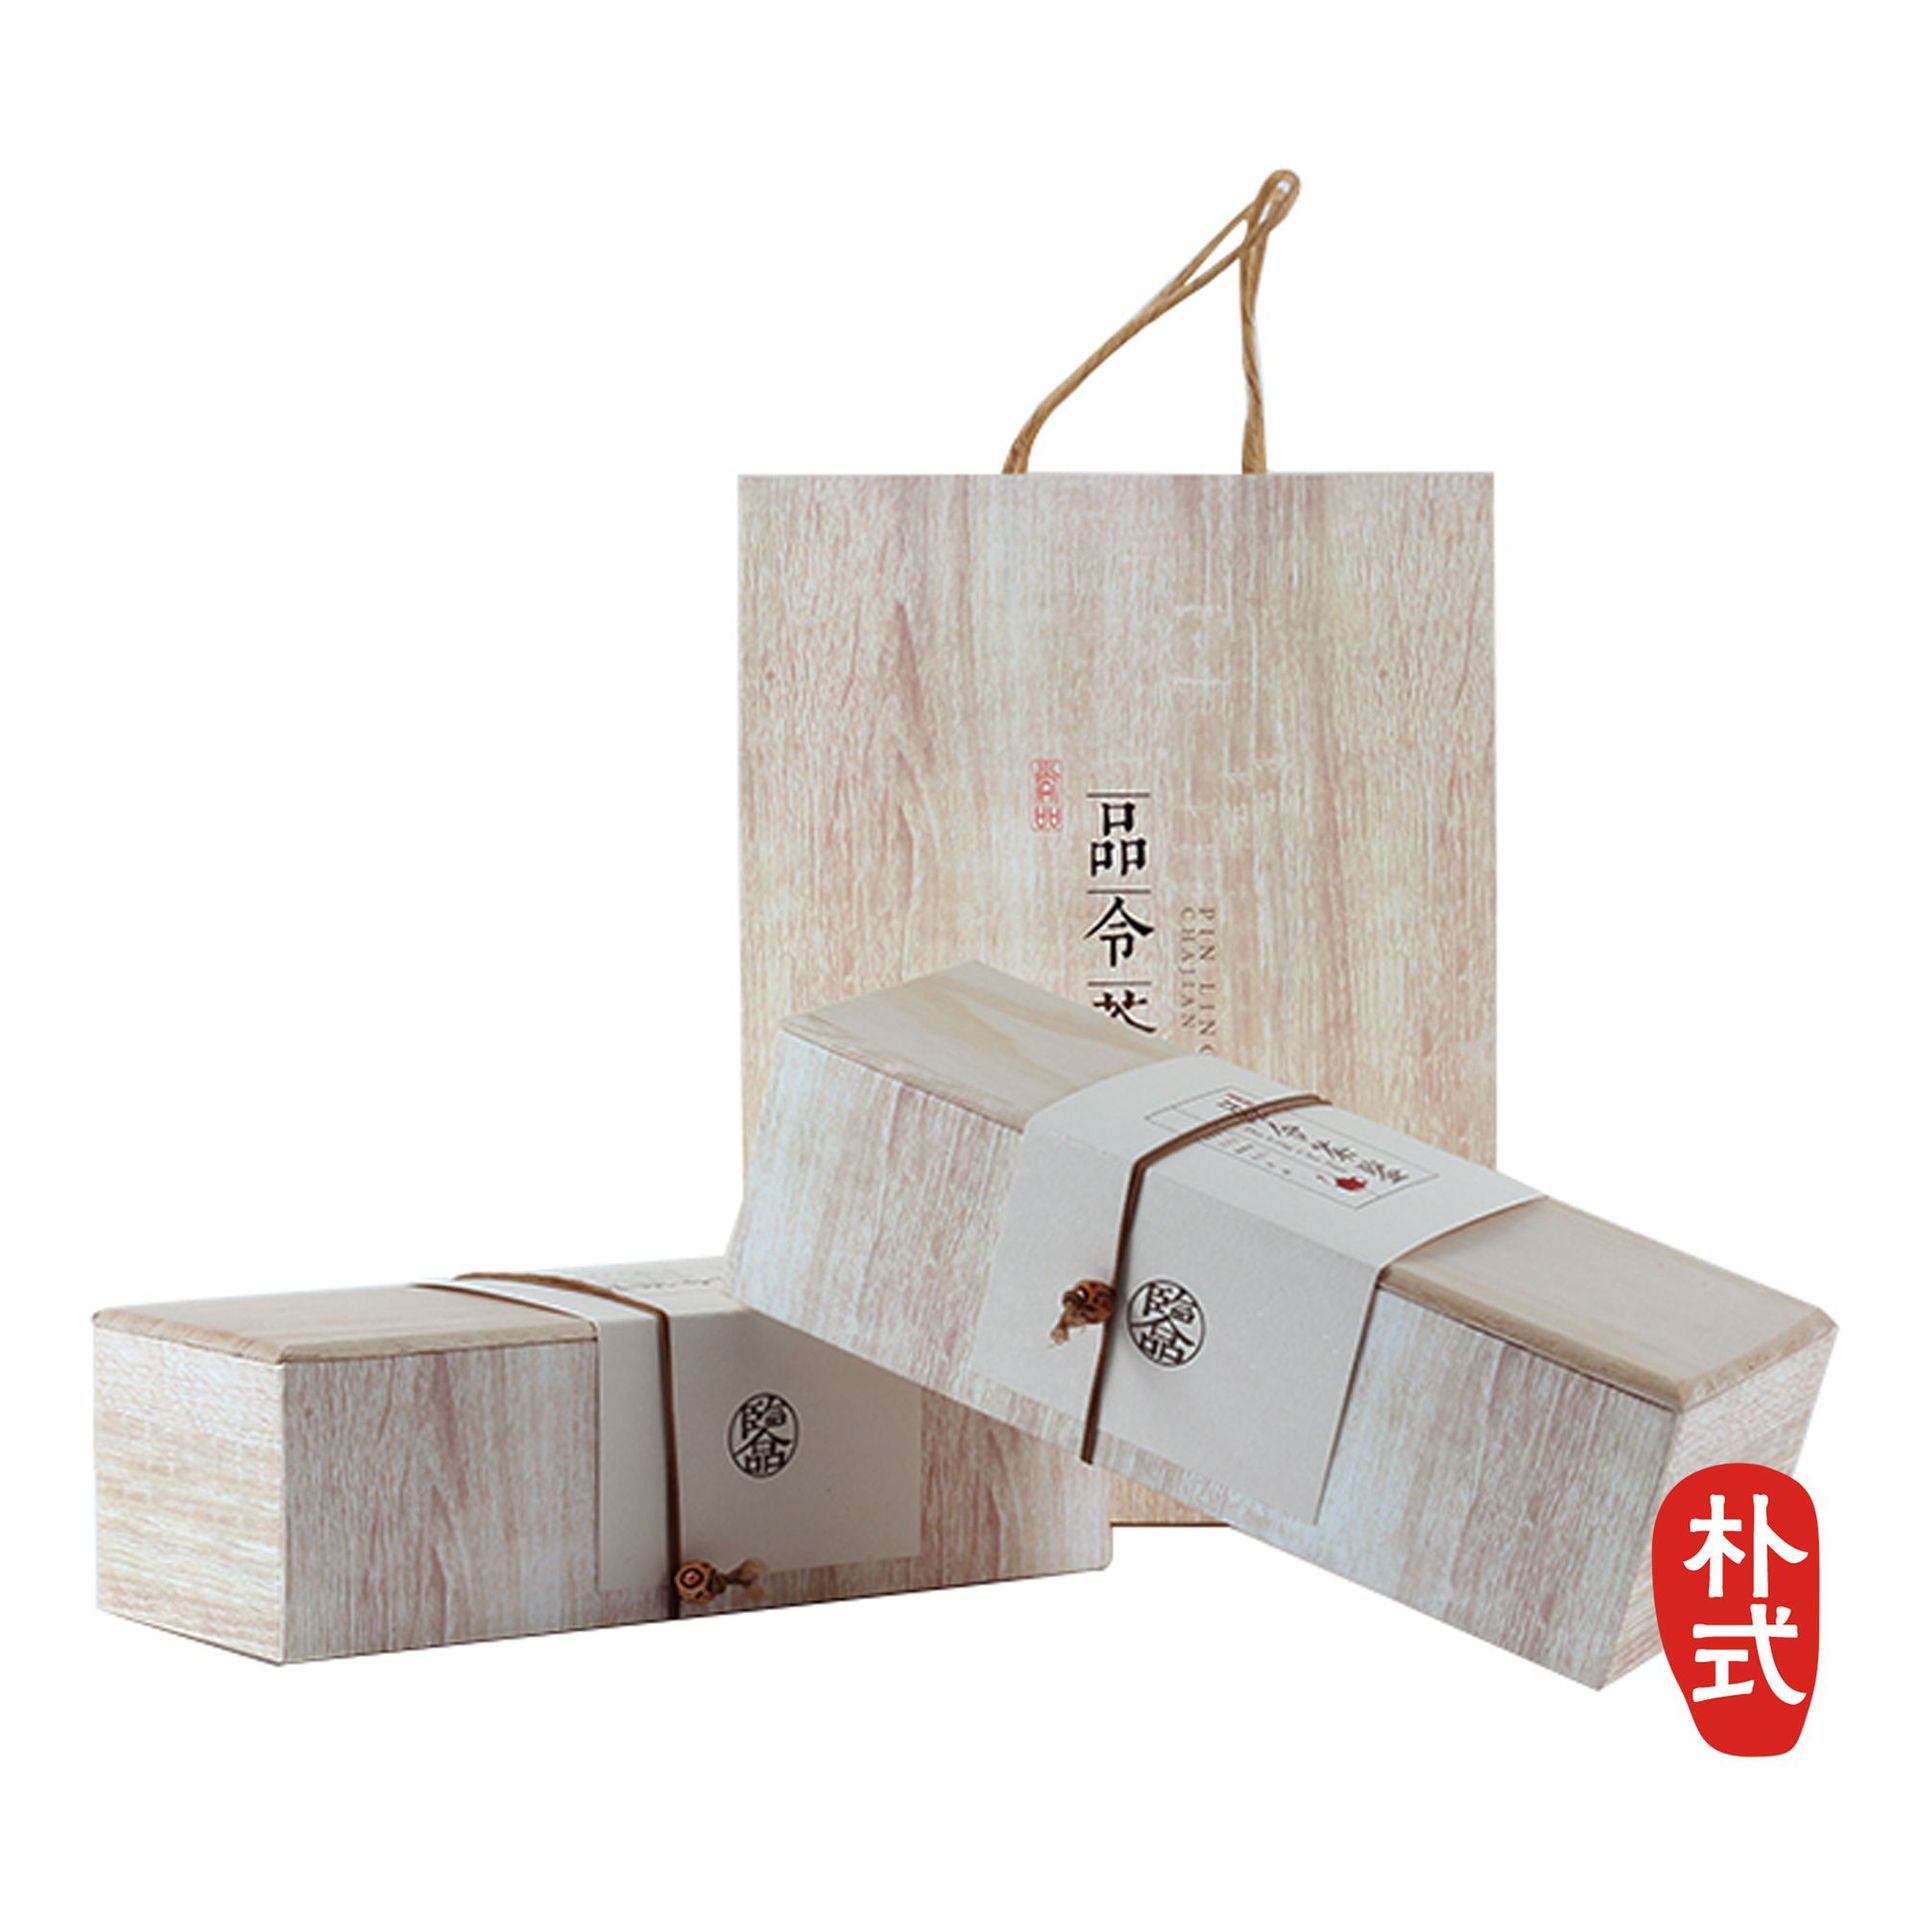 简约原木色高档药材包装盒中纤板鹿茸保健品礼盒木纹纸茶叶盒定制